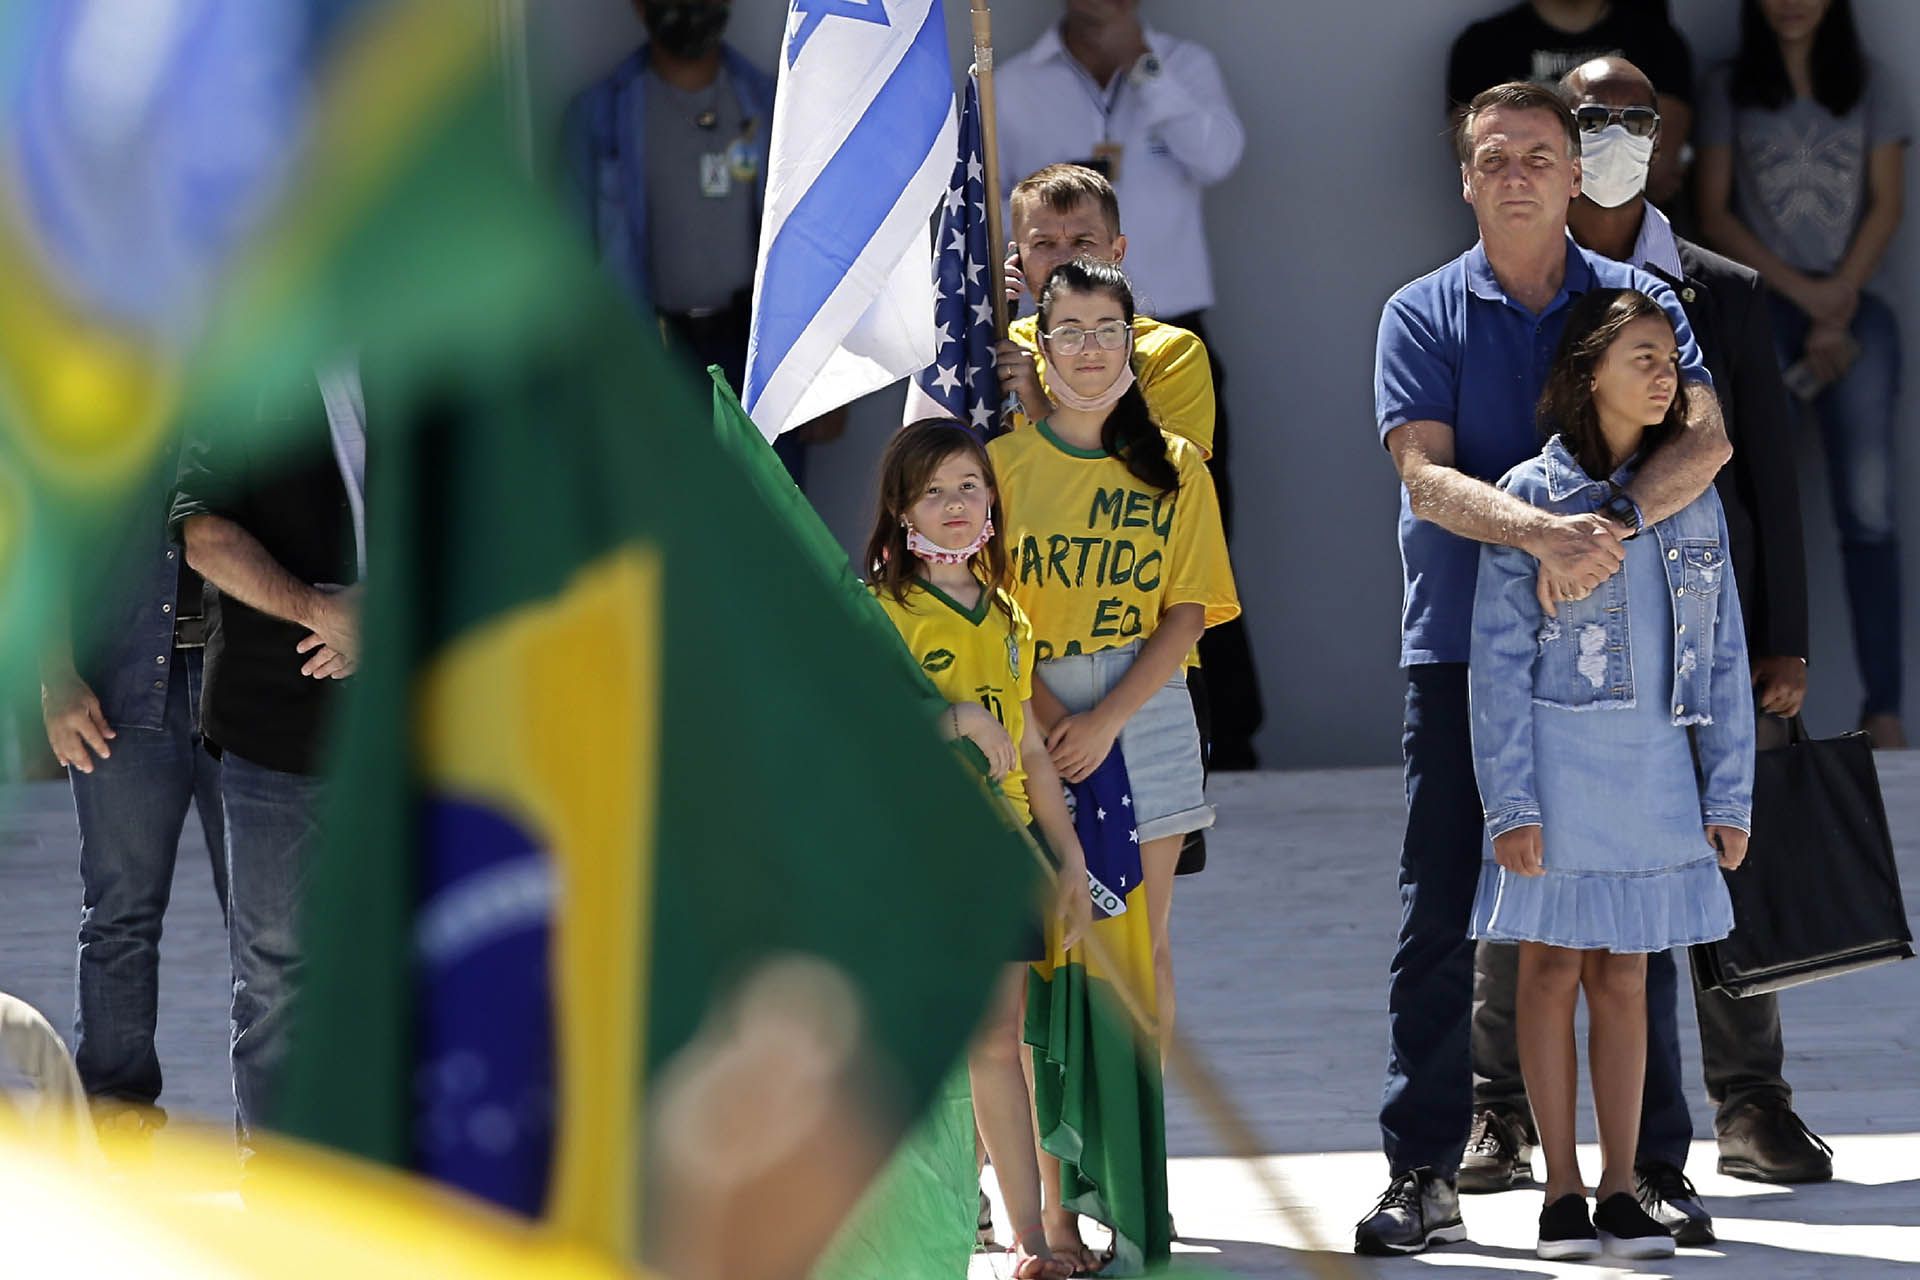 El presidente de Brasil, Jair Bolsonaro, abraza a su hija durante una protesta contra su ex ministro de justicia Sergio Moro y la Corte Suprema, frente al palacio presidencial de Planalto, este dominfo